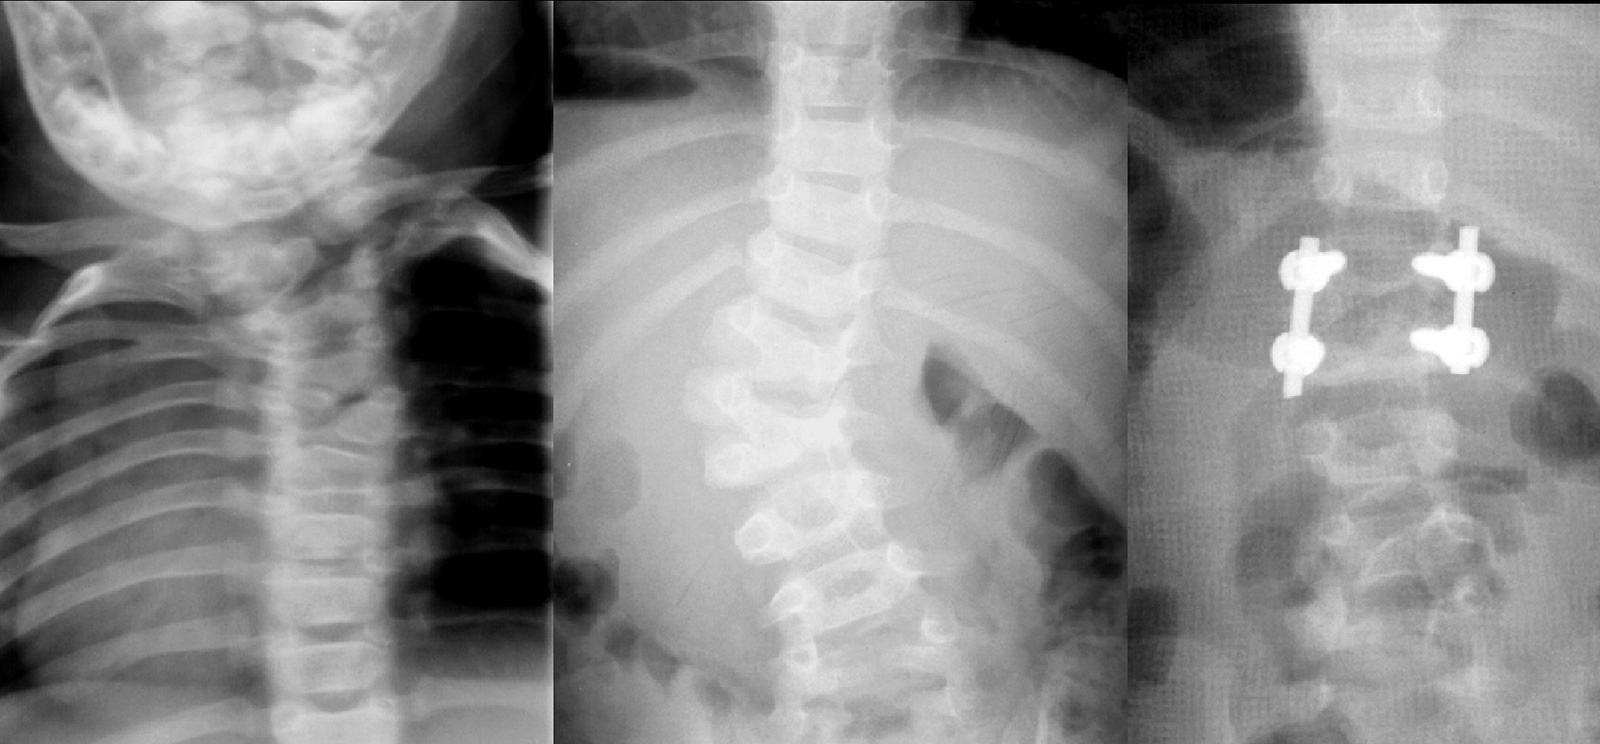 Abb. 5-18: Röntgenbild einer infantilen Skoliose aufgrund einer Segmentationsstörung der oberen Brustwirbelsäule (A) und des thorakolumbalen Übergangs (B). Letztere wurde mit einer Halbwirbelresektion in Kombination mit einer dorsalen Fusion versorgt (C)